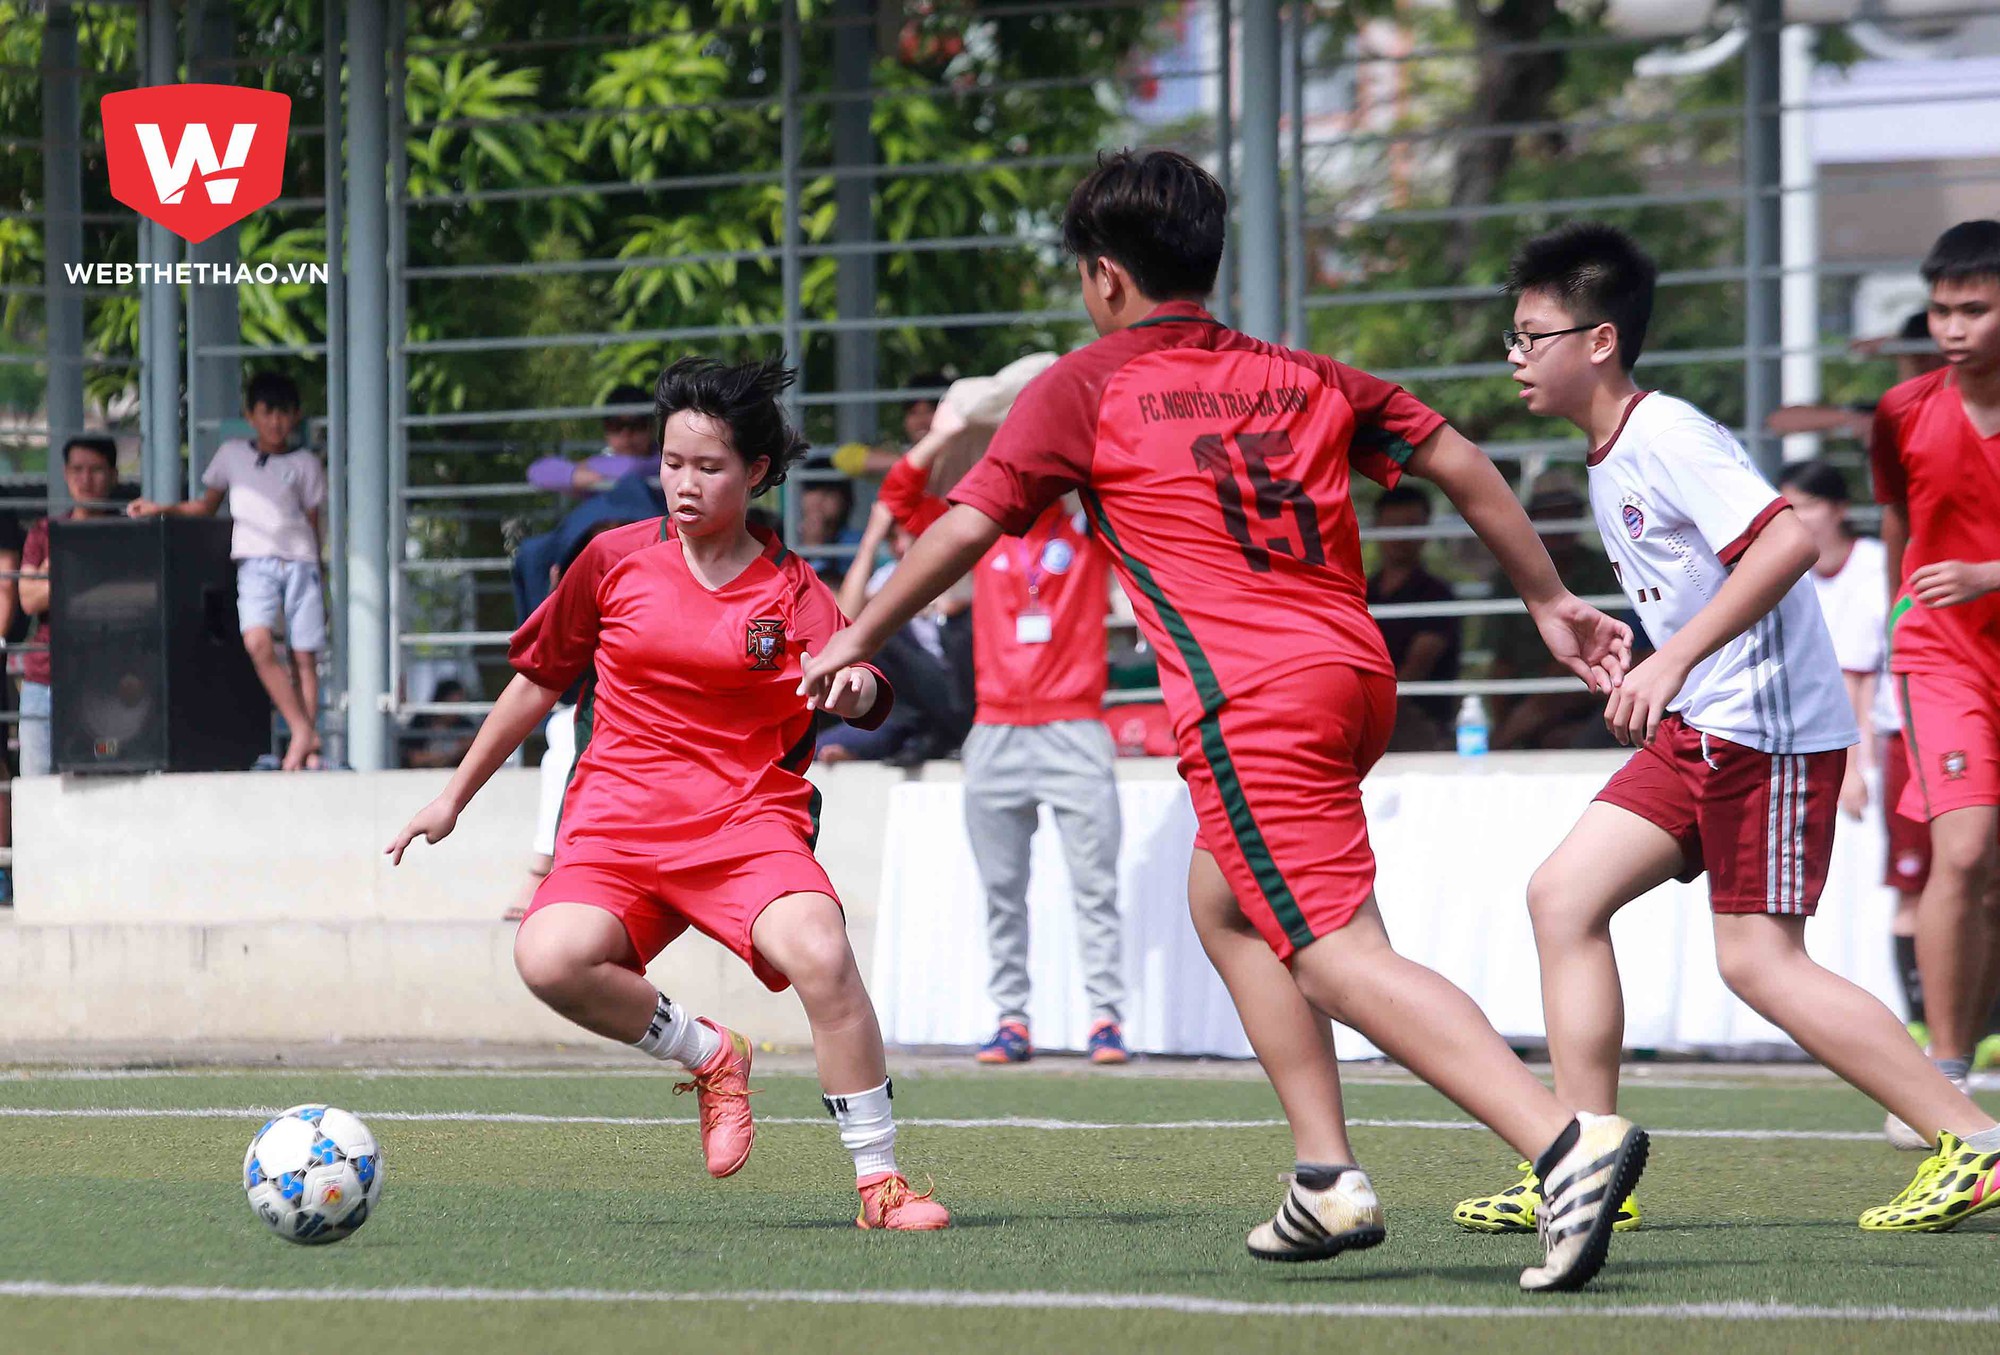 Đặc biệt, vòng loại đã xuất hiện Phương Nguyên - nữ cầu thủ duy nhất tham dự trong màu áo của đội trường THCS Nguyễn Trãi - Ba Đình...